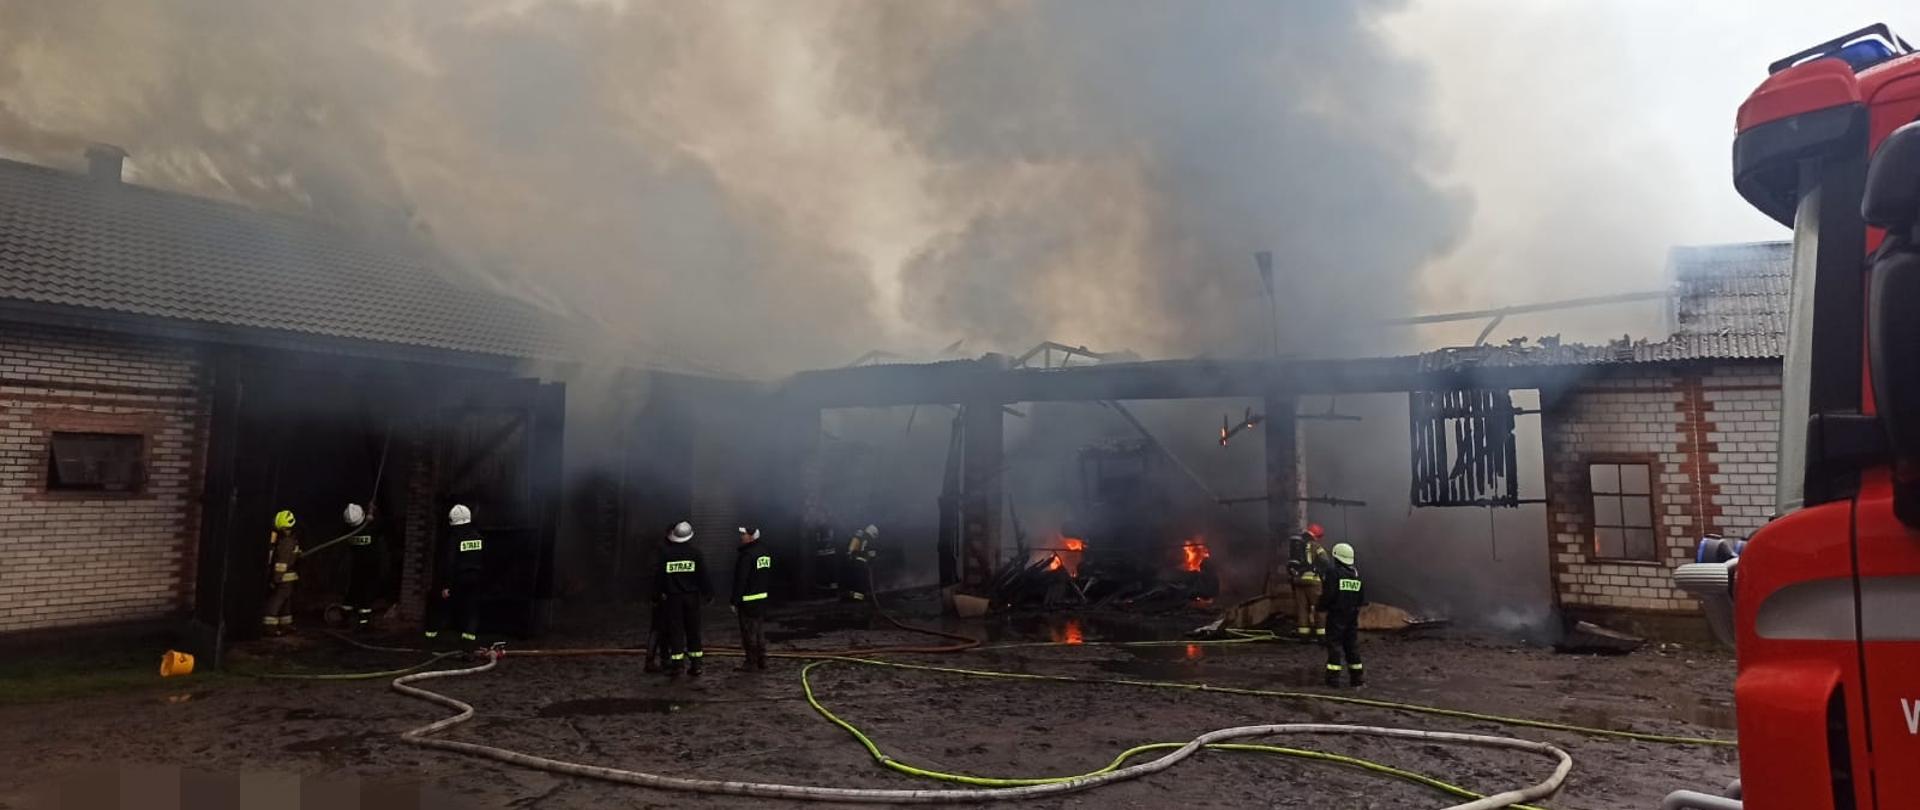 Siedmiu strażaków gasi pożar budynków gospodarczych ustawionych do siebie pod kątem prostym. Dużo dymu, dach częściowo spalony